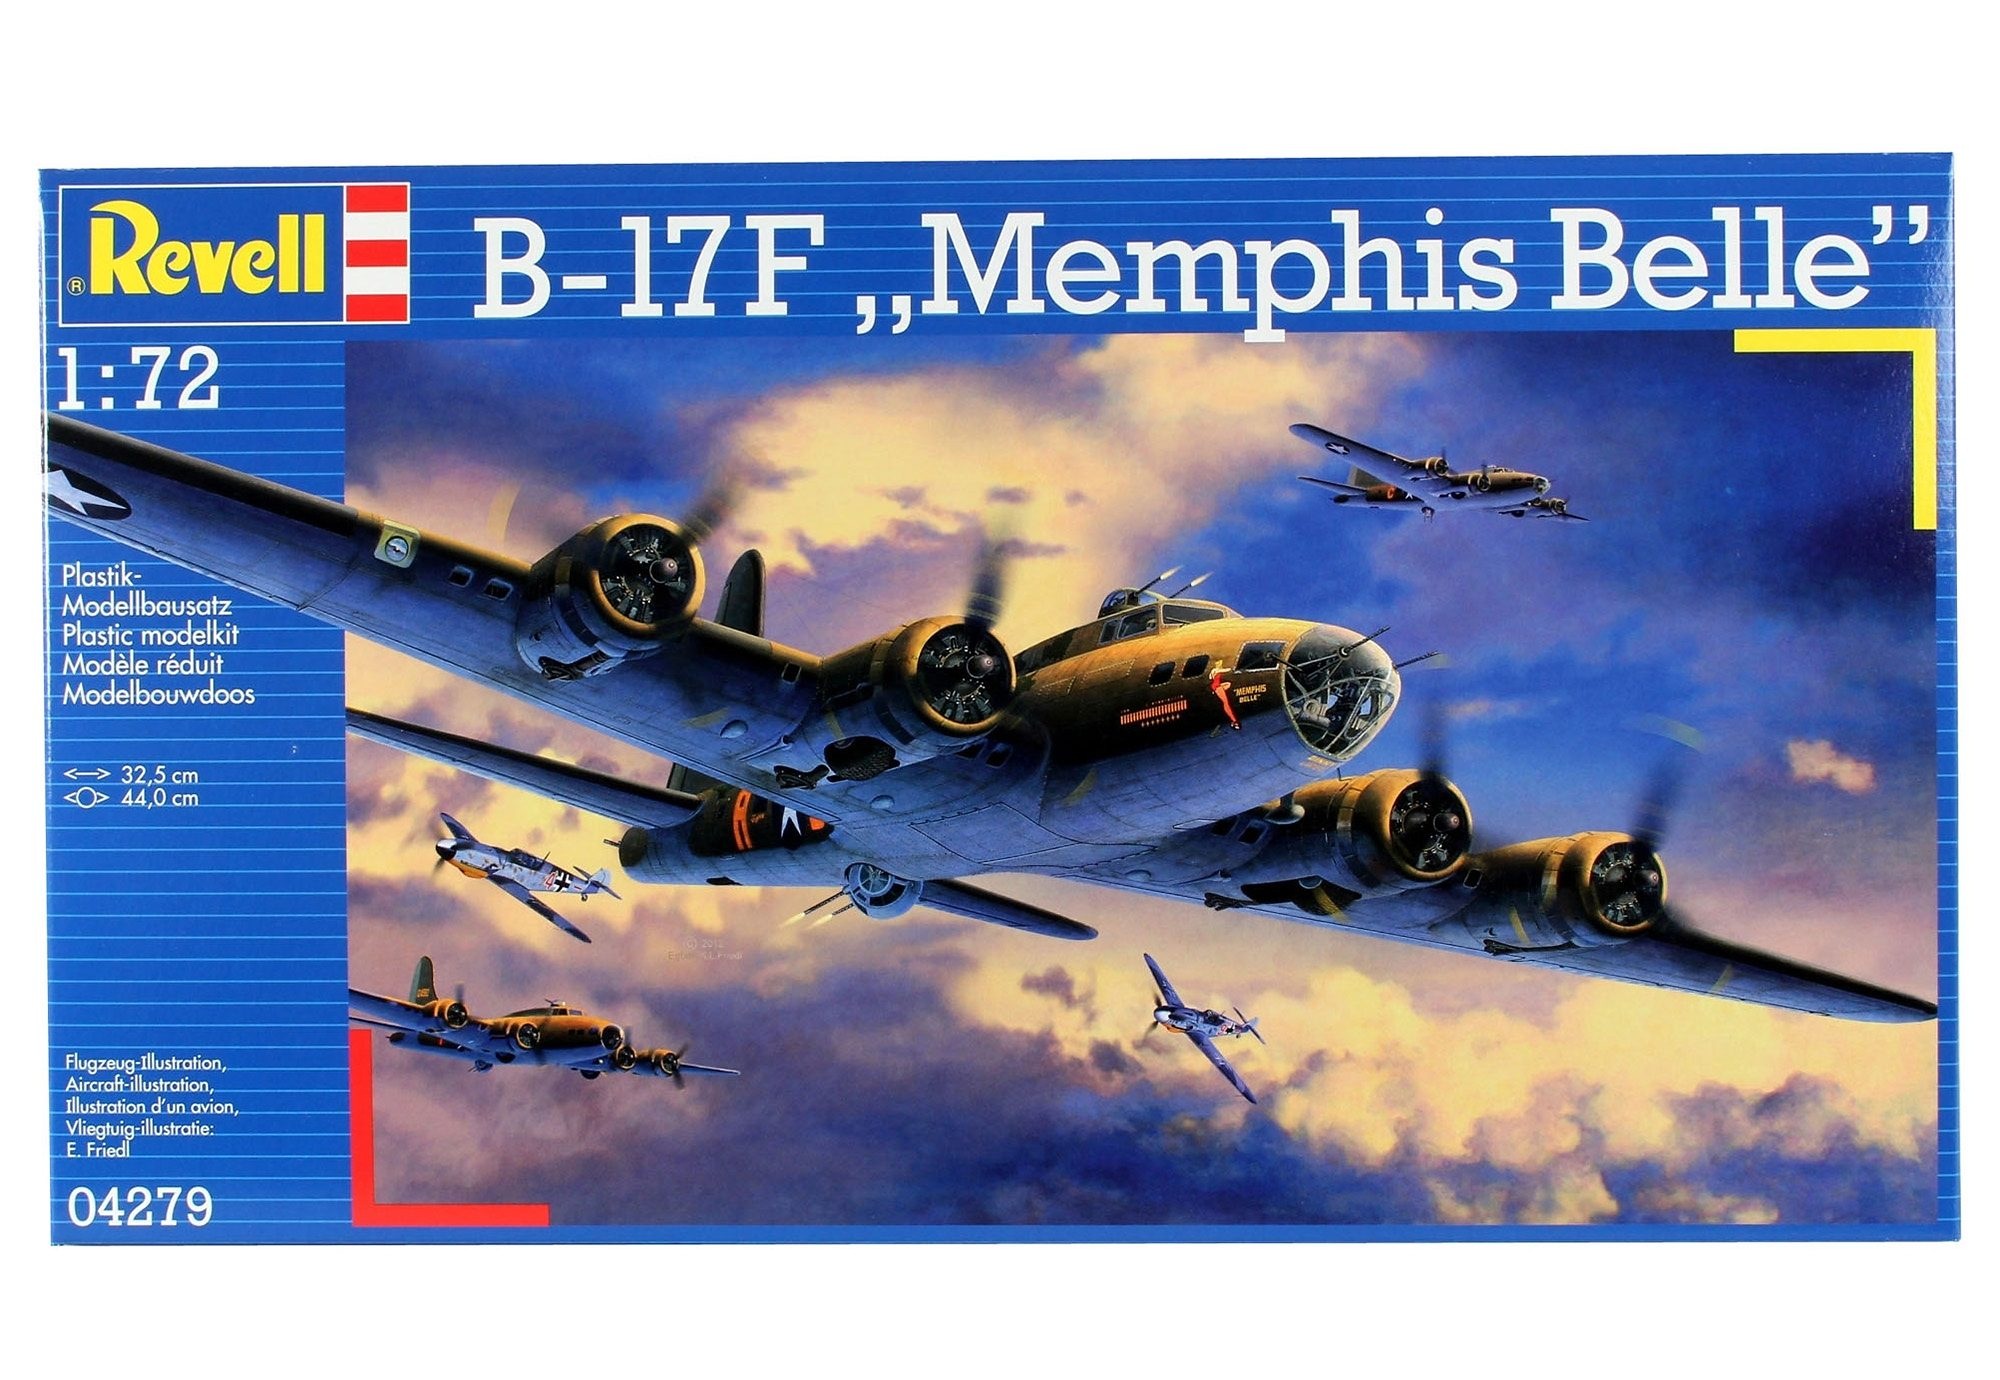 Revell® Modellbausatz »B-17 Memphis Belle«, 1:72, Made in Europe